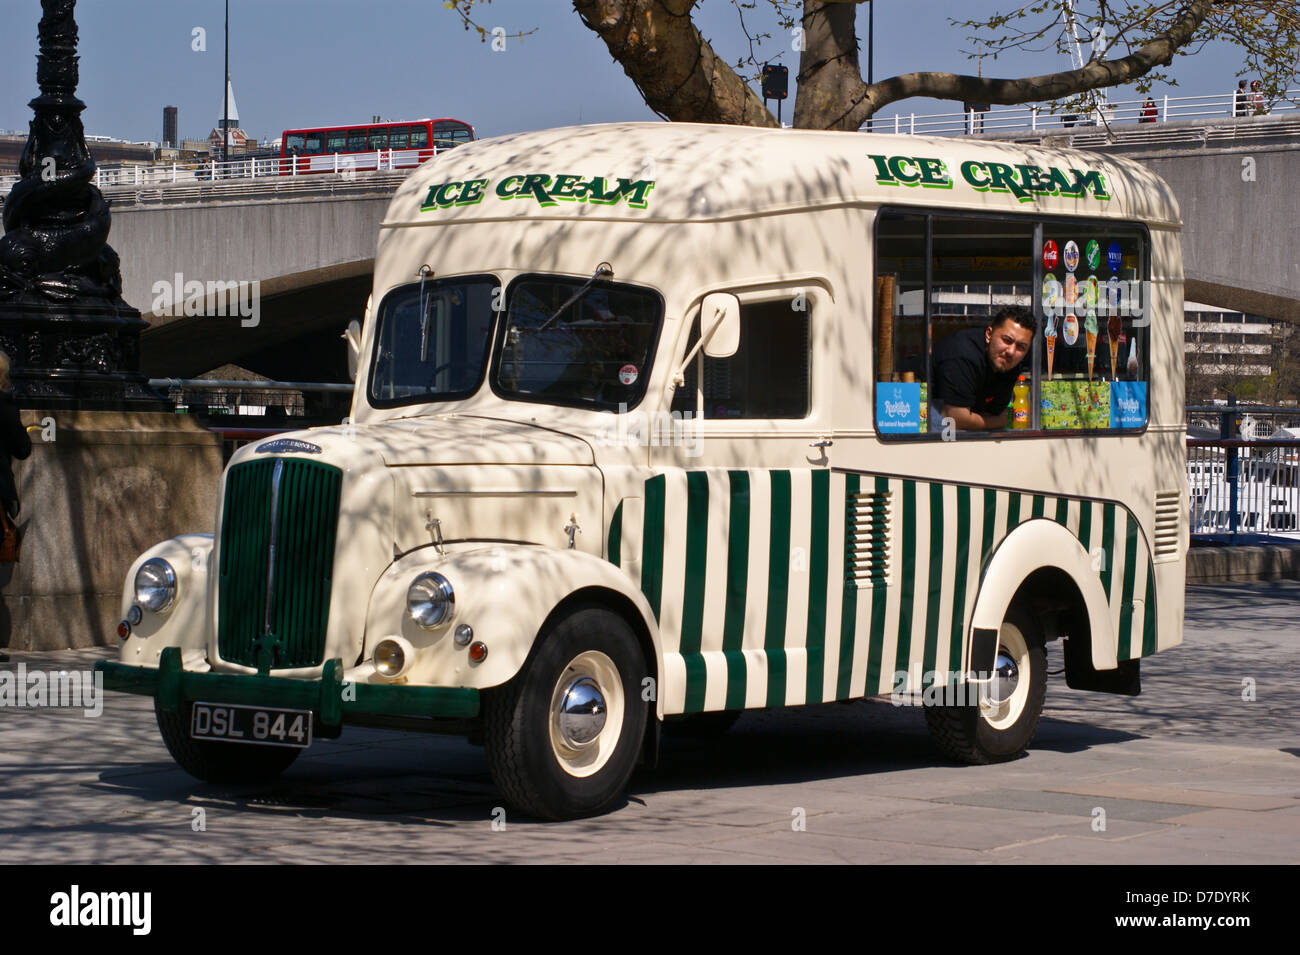 Un gelato van conversione di una Morris Commercial 1 ton carrello, South Bank di Londra, Inghilterra Foto Stock